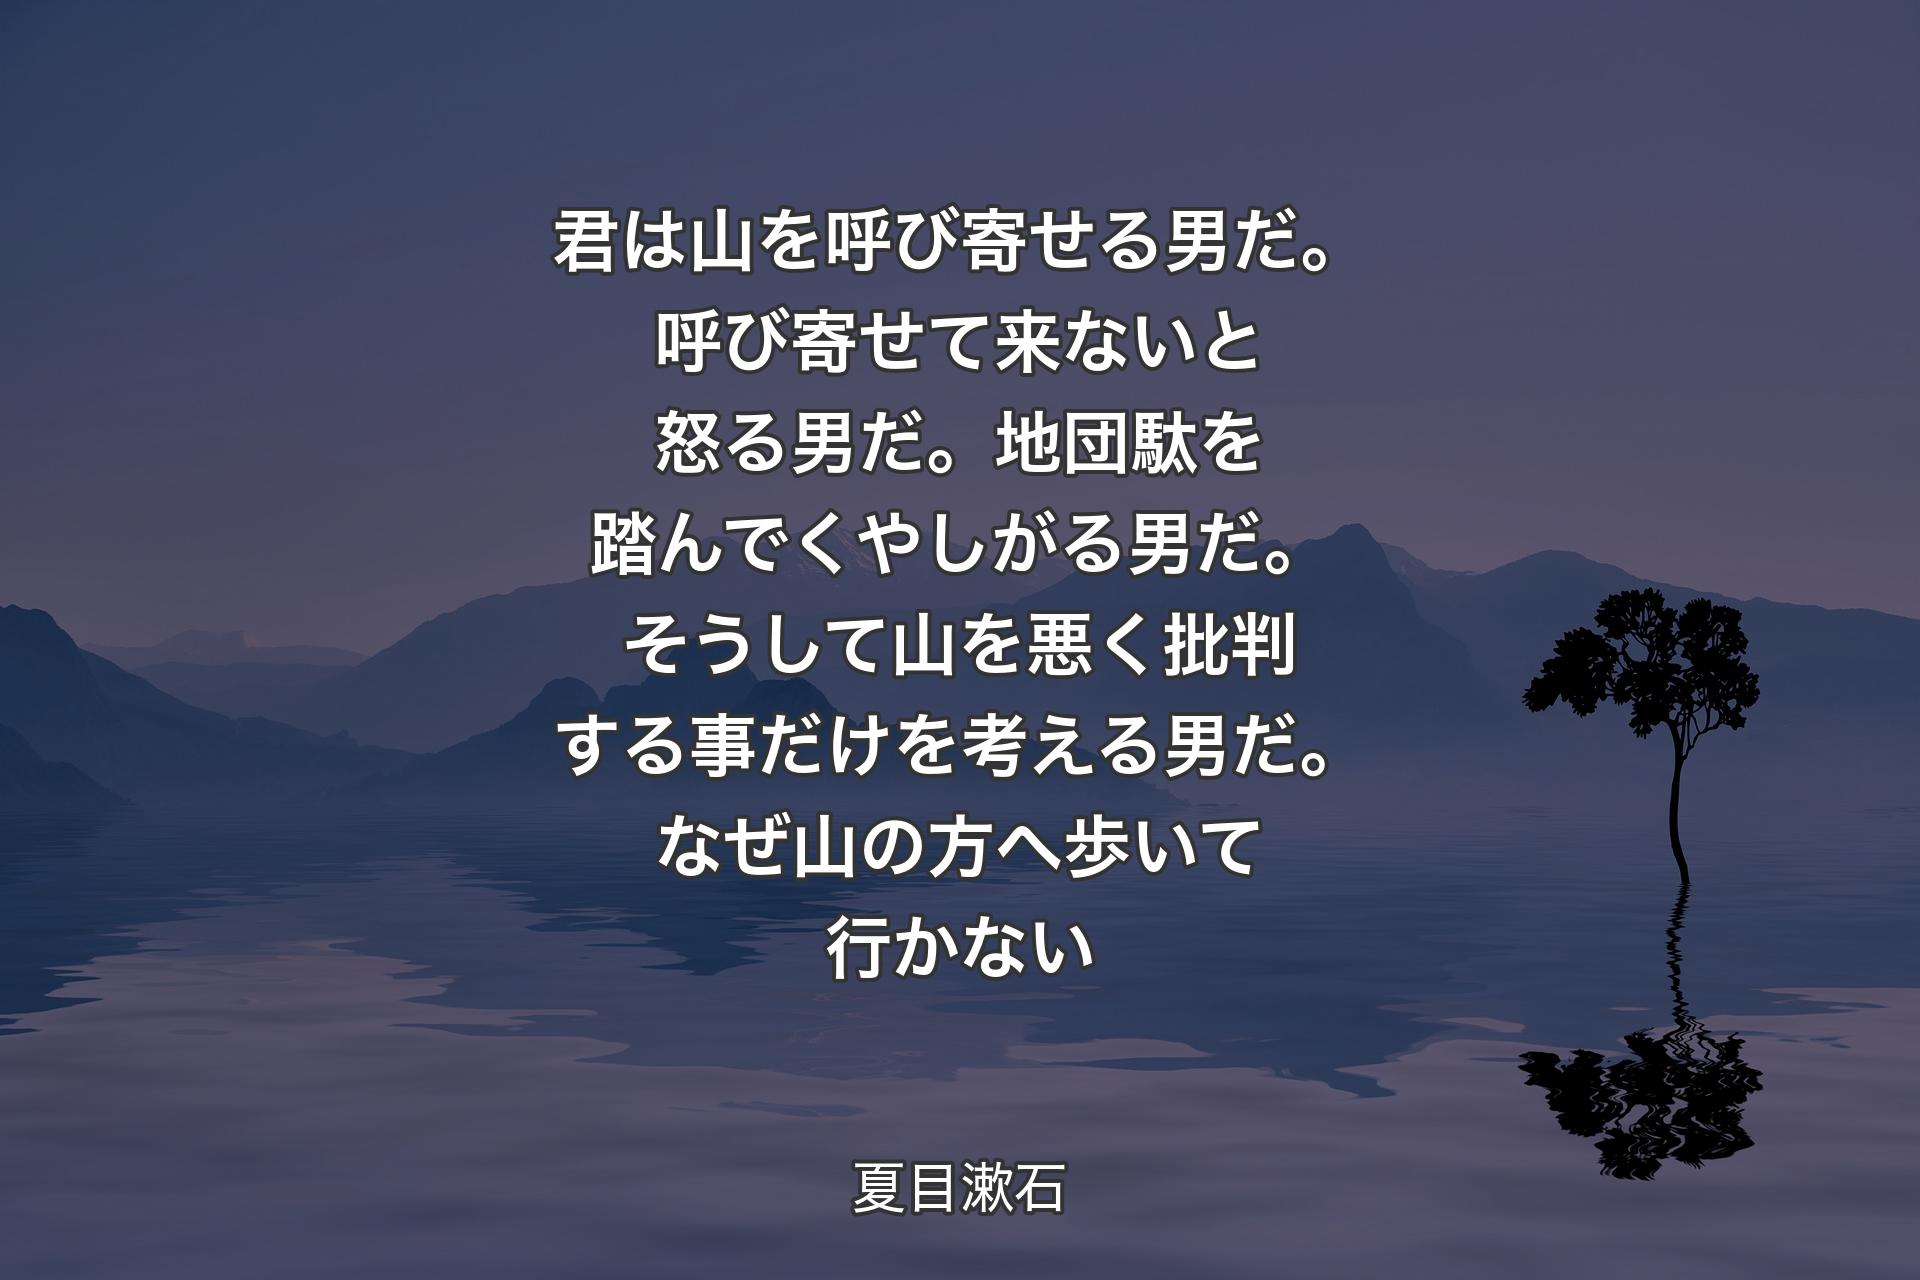 【背景4】君は山を呼び寄せる男だ。呼び寄せて来ないと怒る男だ。地団駄を踏んでくやしがる男だ。そうして山を悪く批判する事だけを考える男だ。なぜ山の方へ歩いて行かない - 夏目漱石